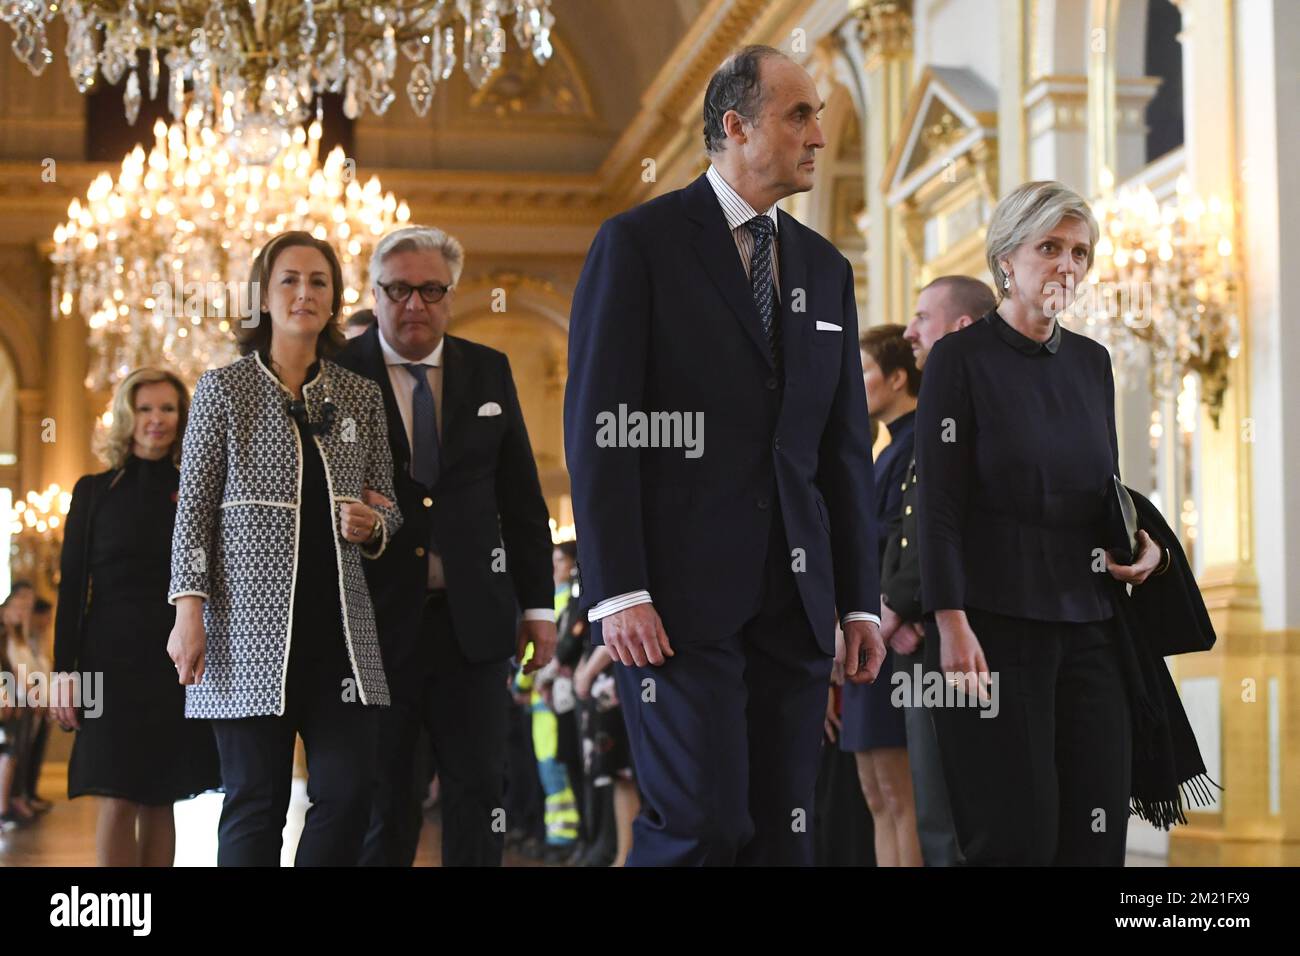 La princesse Claire, le prince Laurent, le prince Lorenz et la princesse Astrid assistent à un service de mémoire royal pour les victimes des attentats terroristes de 22 mars, le dimanche 22 mai 2016, au Palais royal de Bruxelles. BELGA PHOTO POOL FREDERIC SIERAKOWSKI Banque D'Images